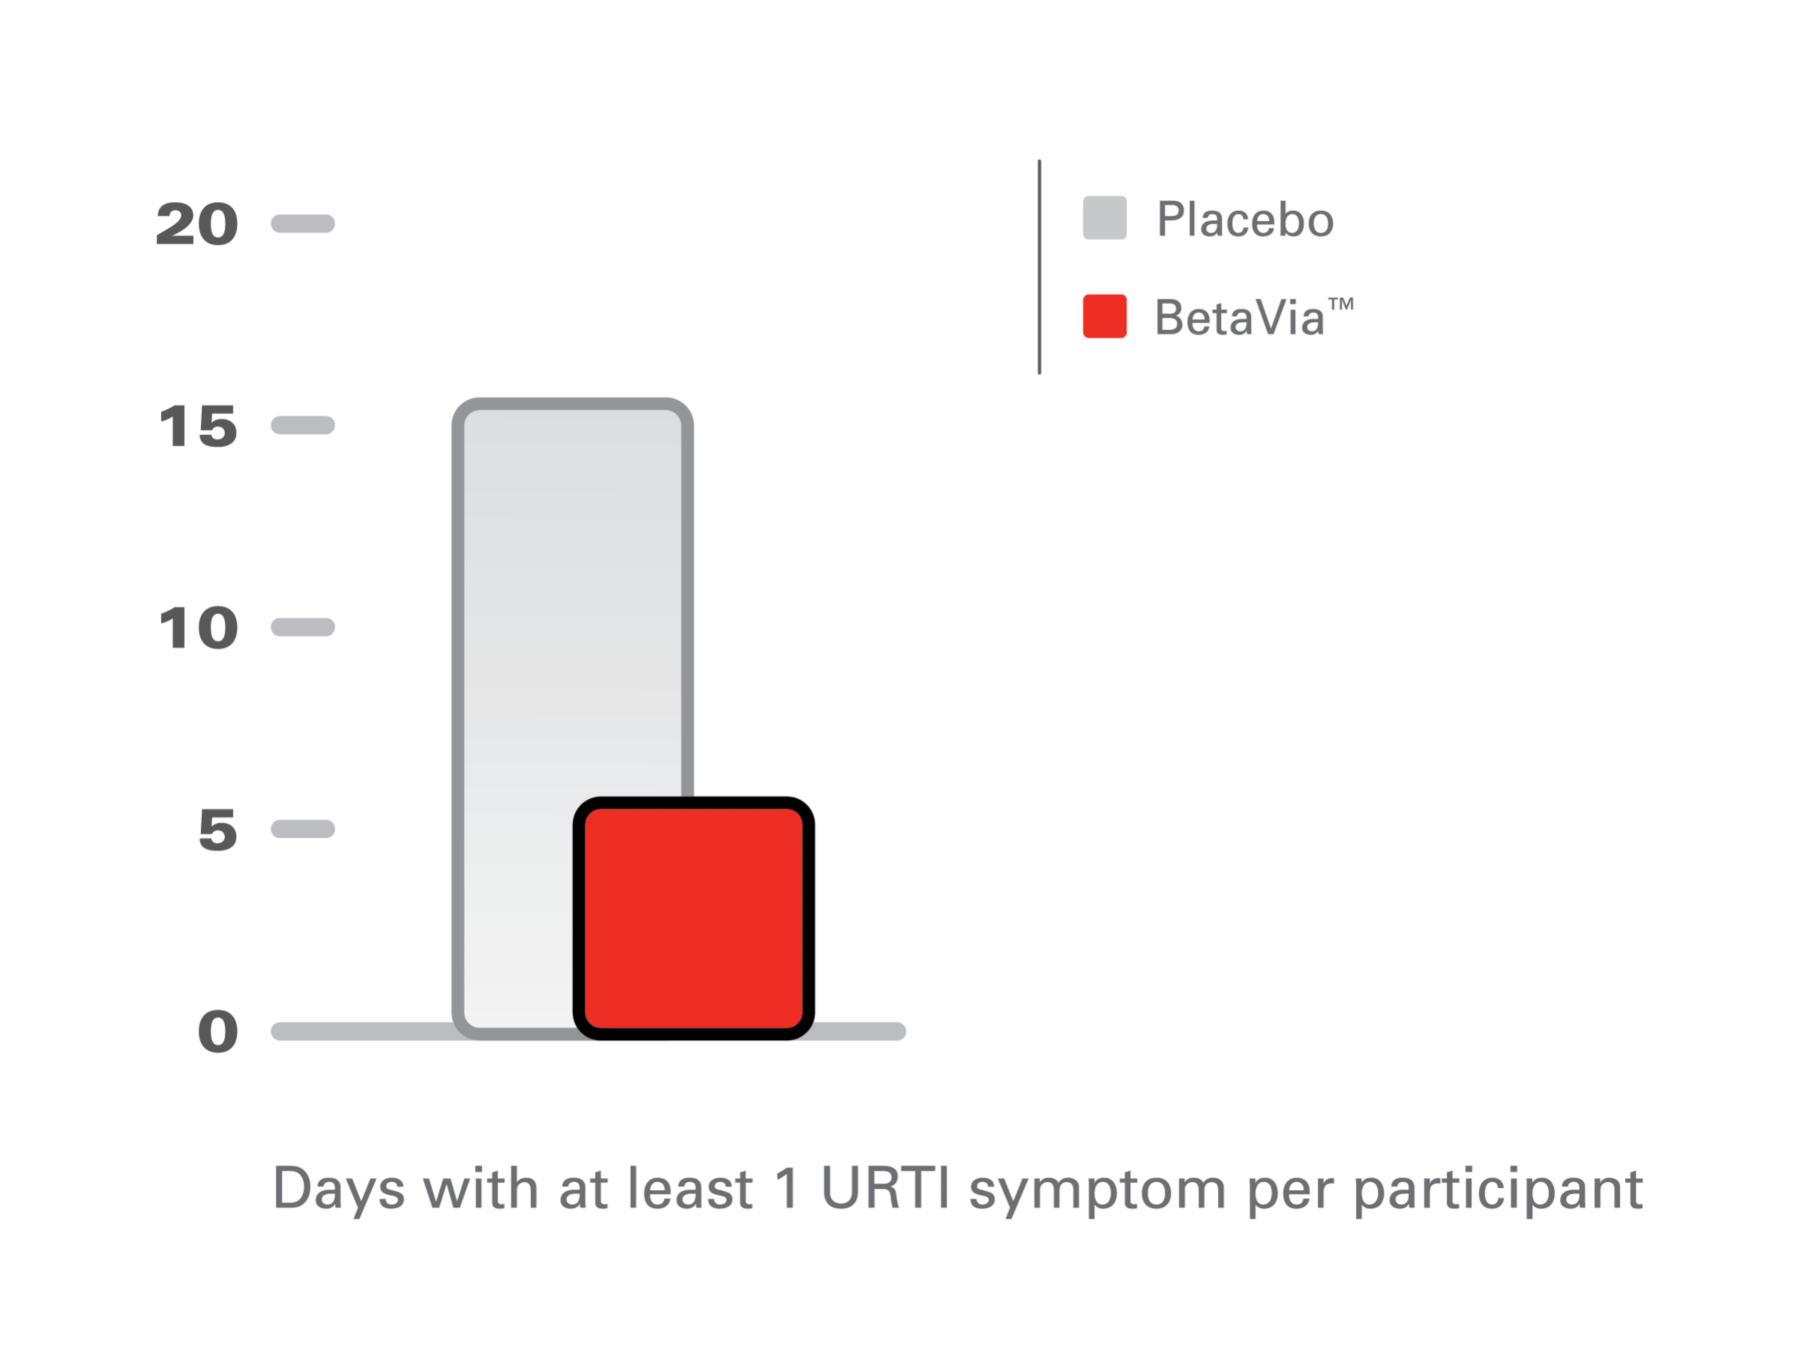 URTI symptoms per participant (1)